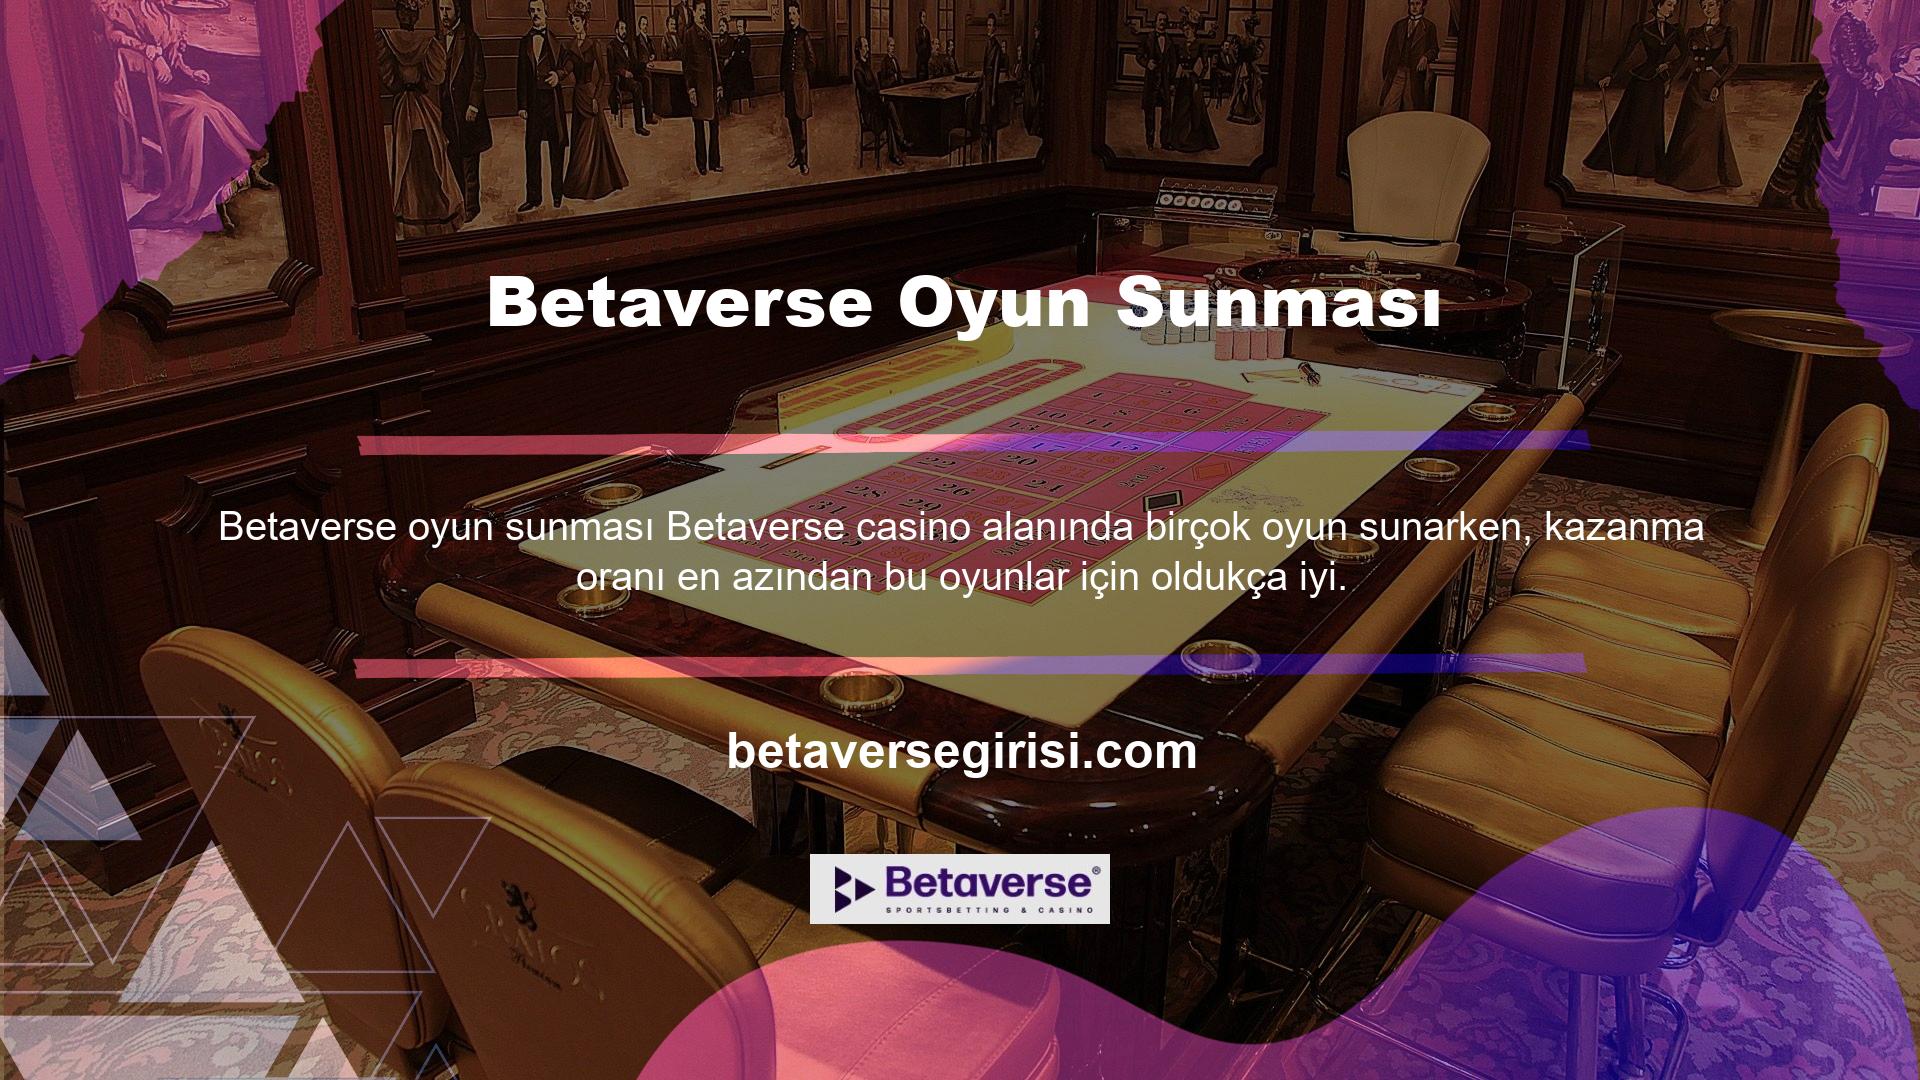 Betaverse Casino Games, herhangi bir olumsuz geri bildirimden kaçınmayı başardı ve bu konuda giderek daha fazla kullanıcı katıyor